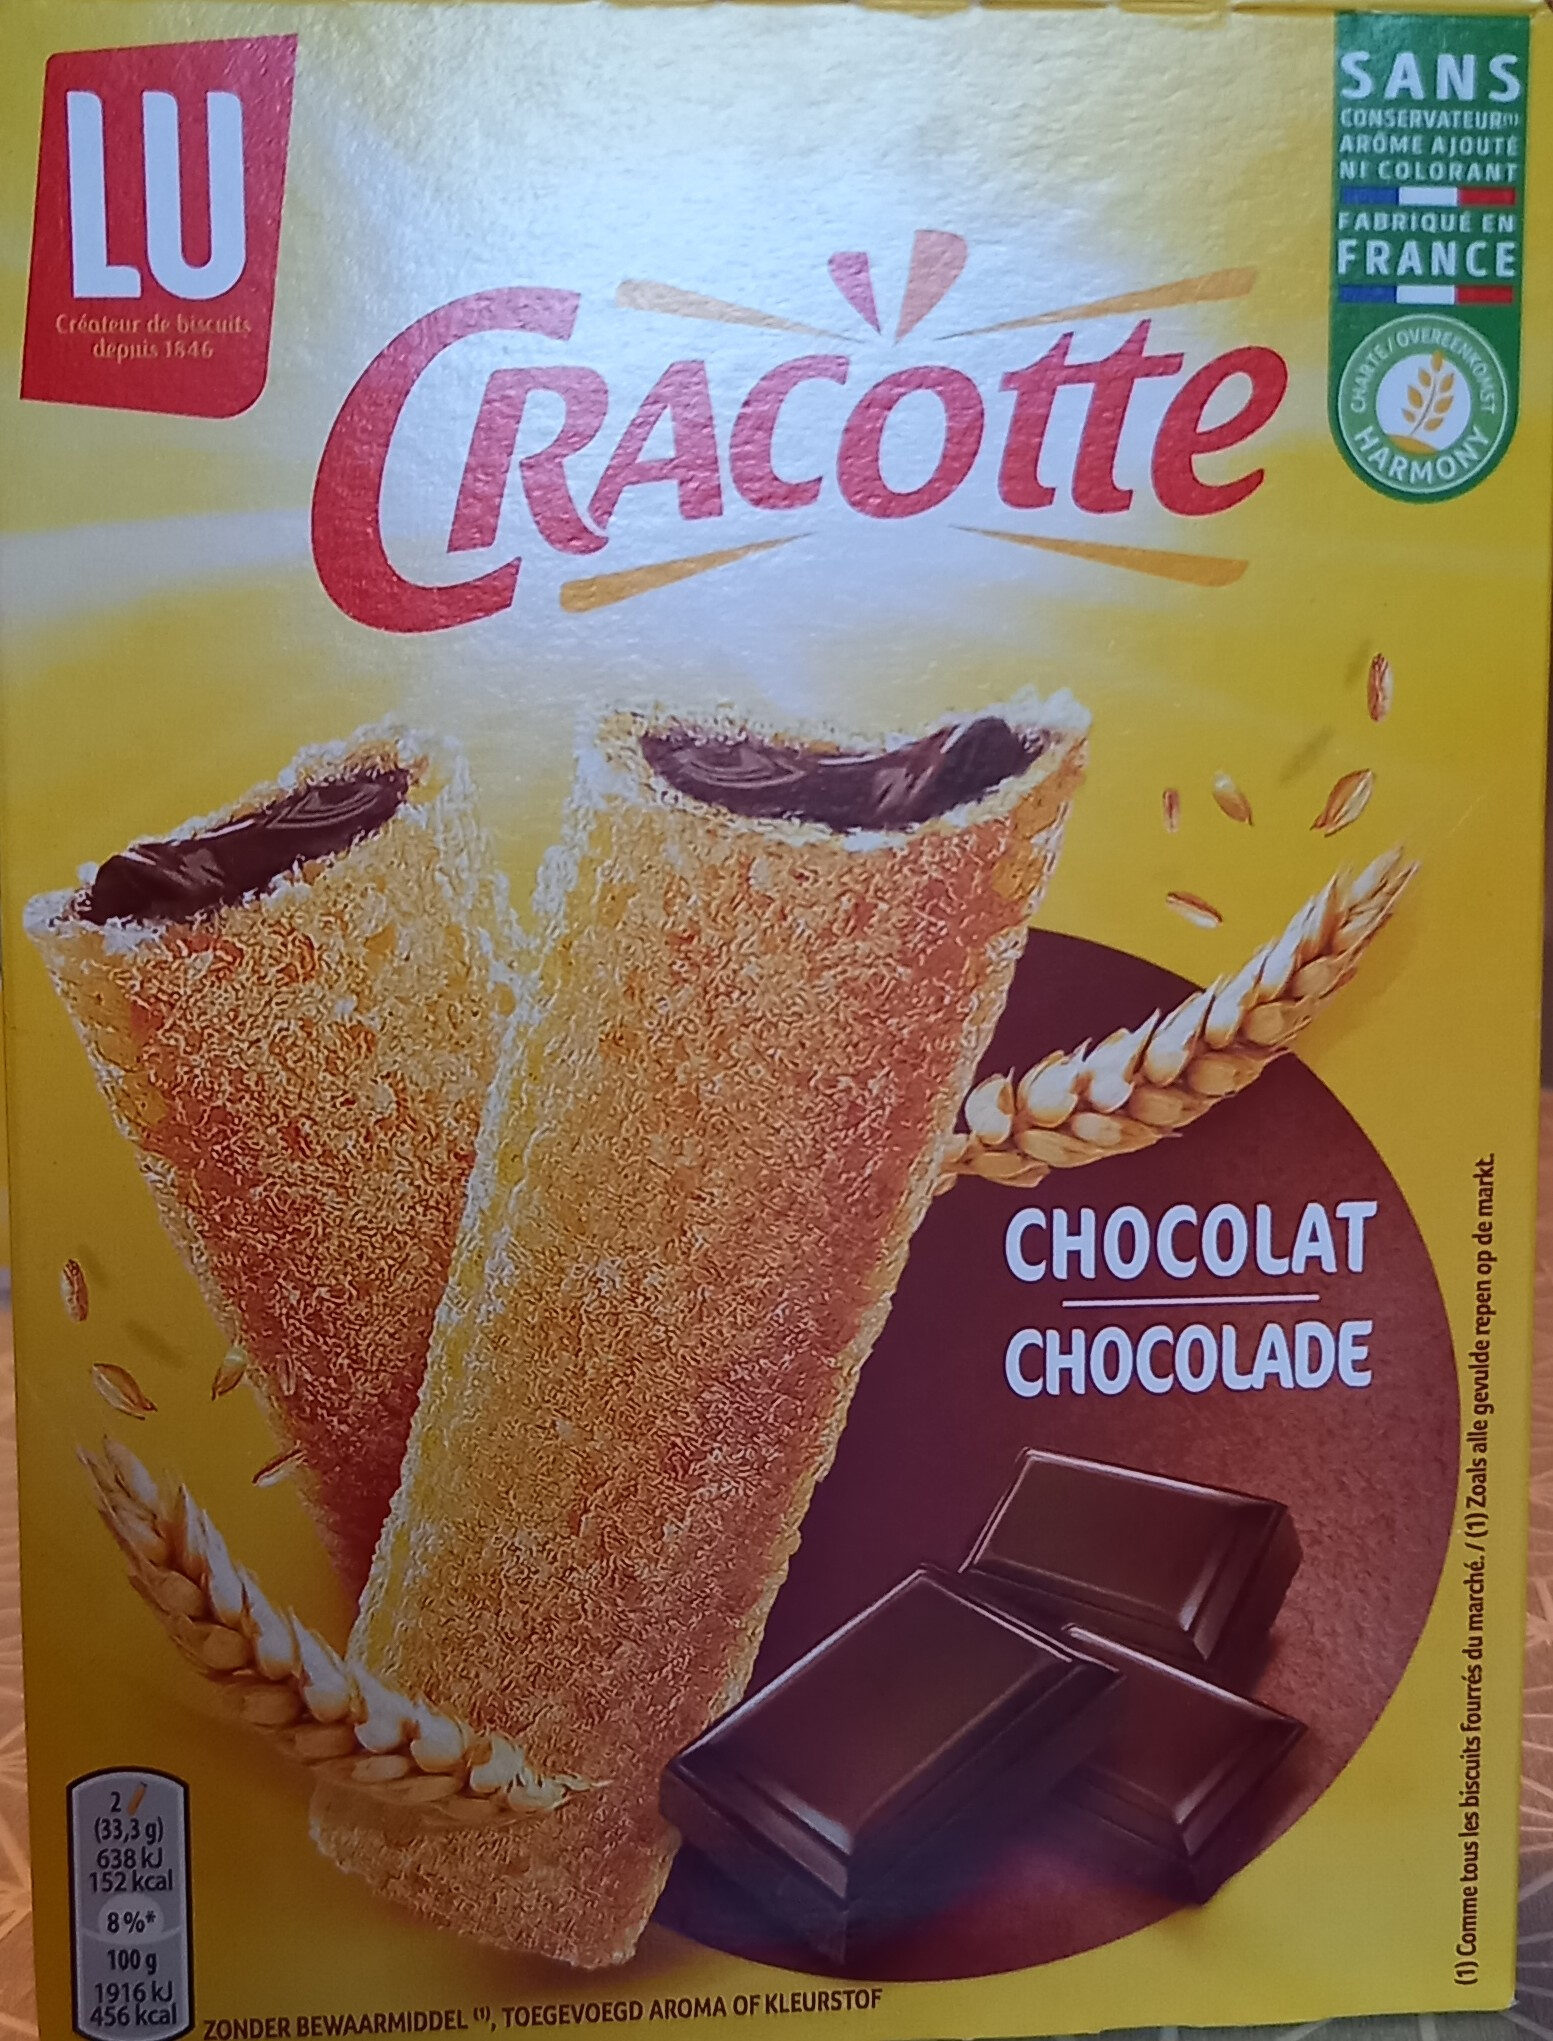 Bâtonnets de céréales fourrés (47,5 %) au chocolat - Cracotte Chocolat - Product - fr